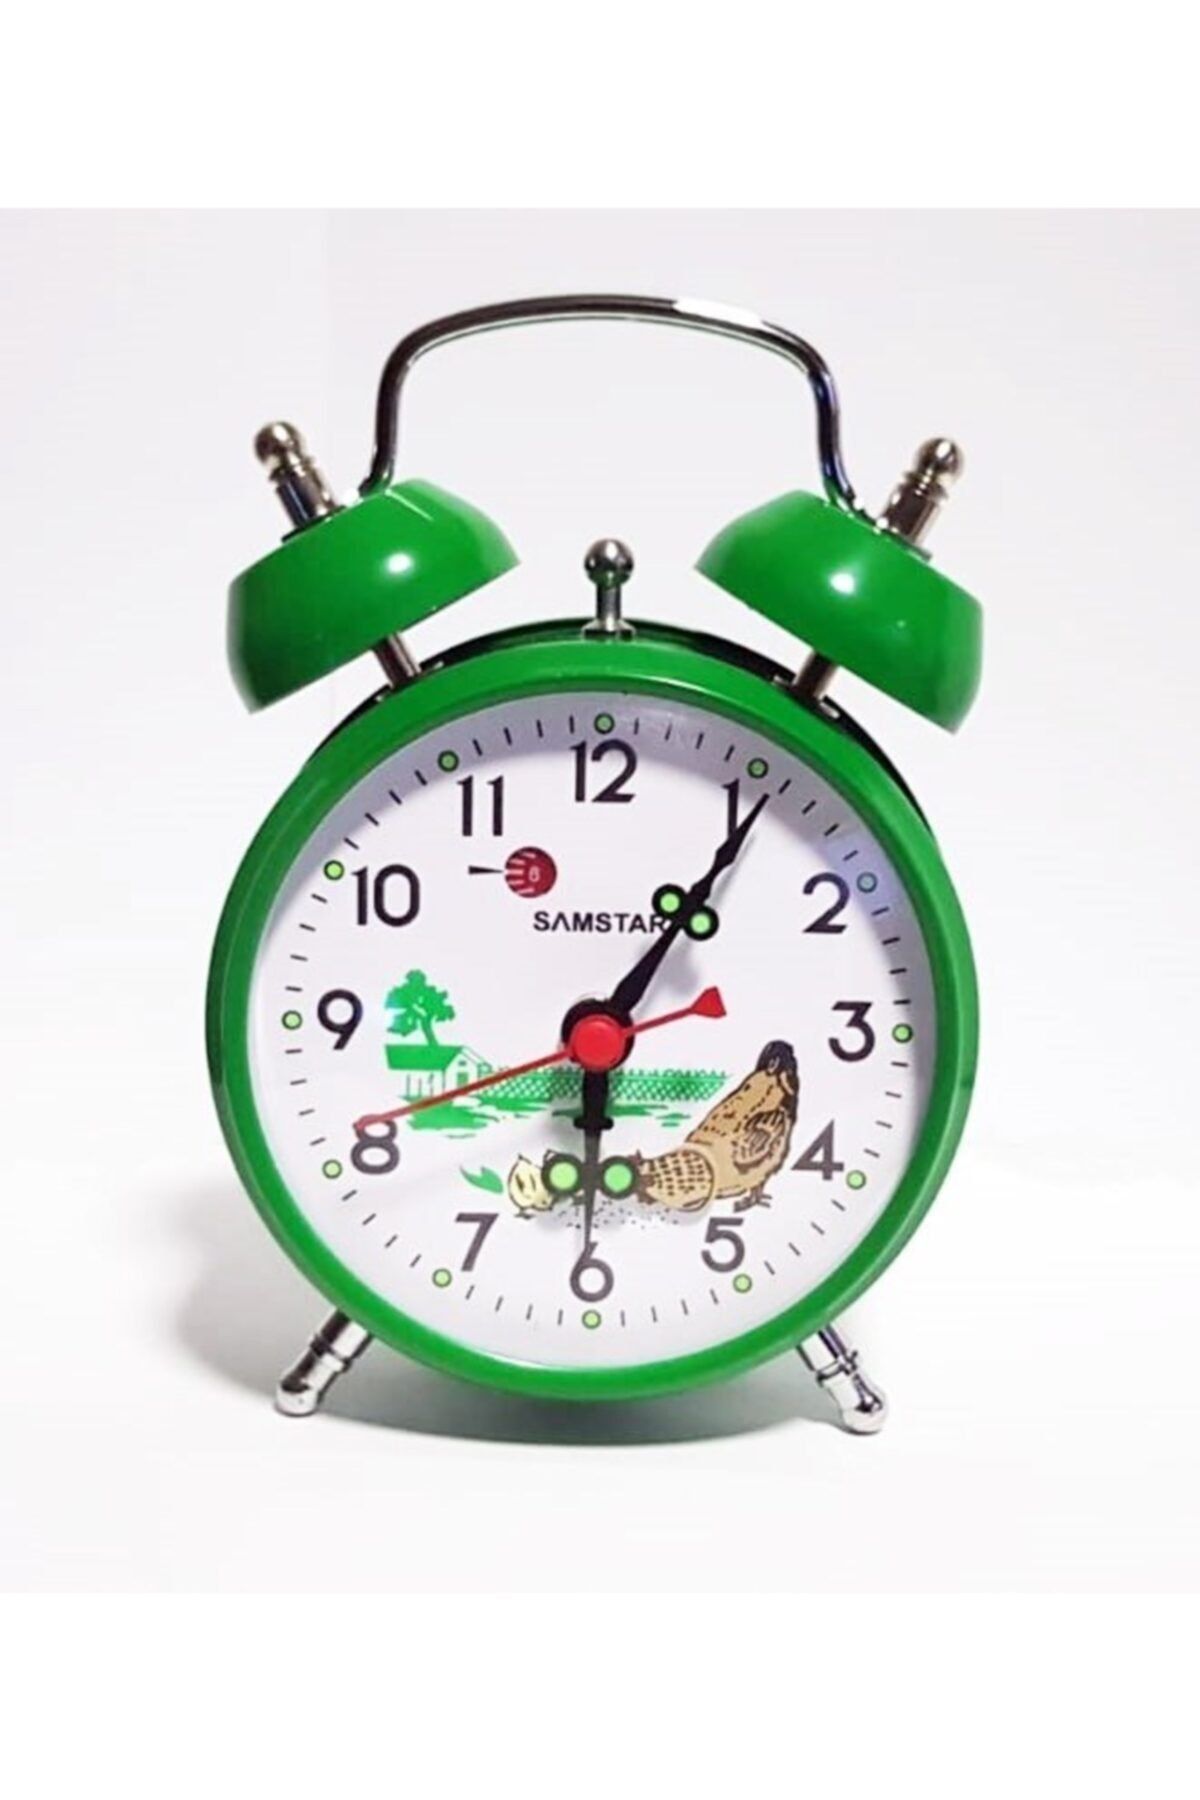 RoseRoi Nostaljik Görünümlü Tavuklu Kurmalı Masa Saati Horozlu Çalar Saat